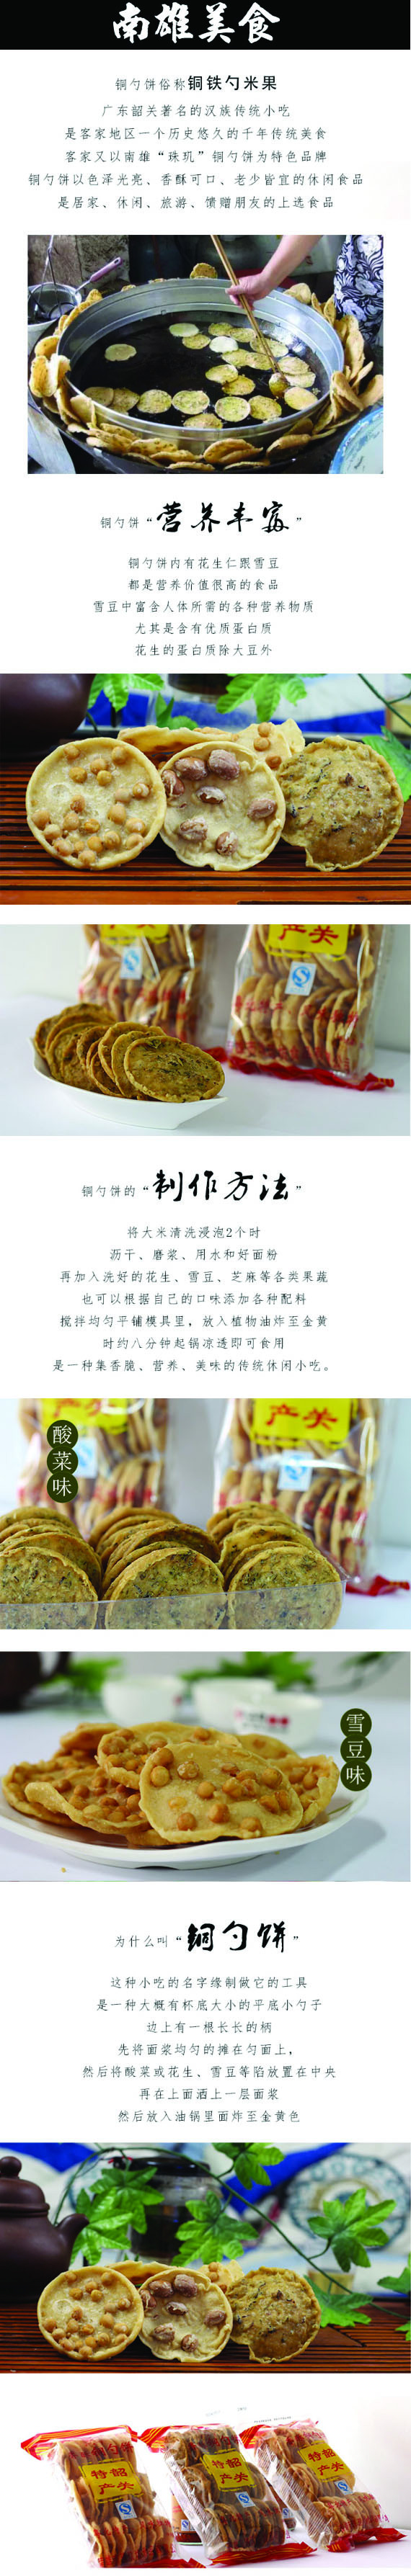 【南雄馆】韶关南雄 千年传统美食 铜勺饼 家庭装238g 口味：雪豆味、花生味、酸菜味